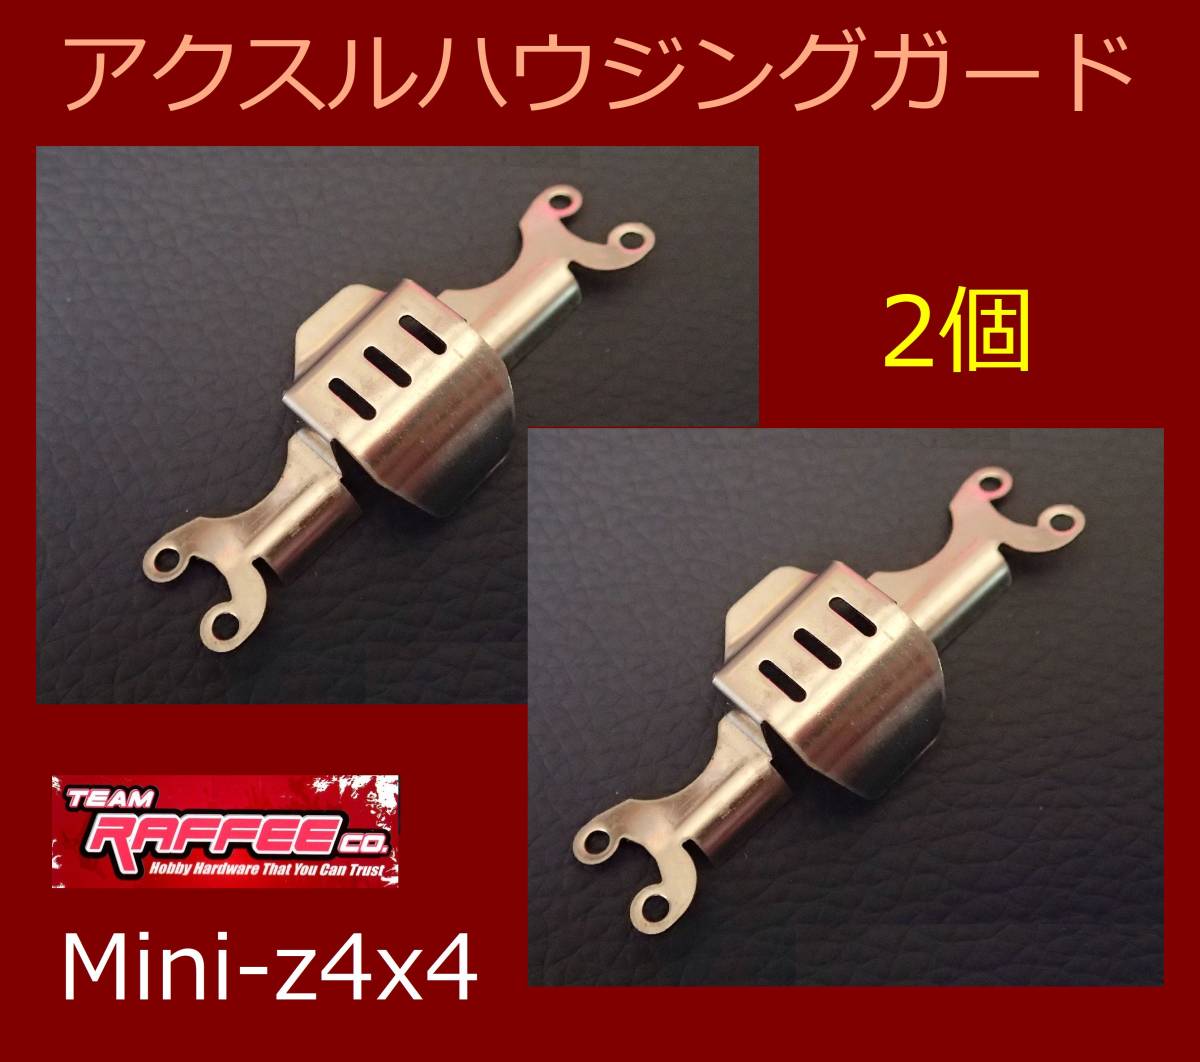 アクスルハウジング ガード Mini-z4x4 アンダーガード SUS製 2個 (検索 クローラー ミニッツ4x4 jmny jeep ラングラー ミニッツ 4x4 )